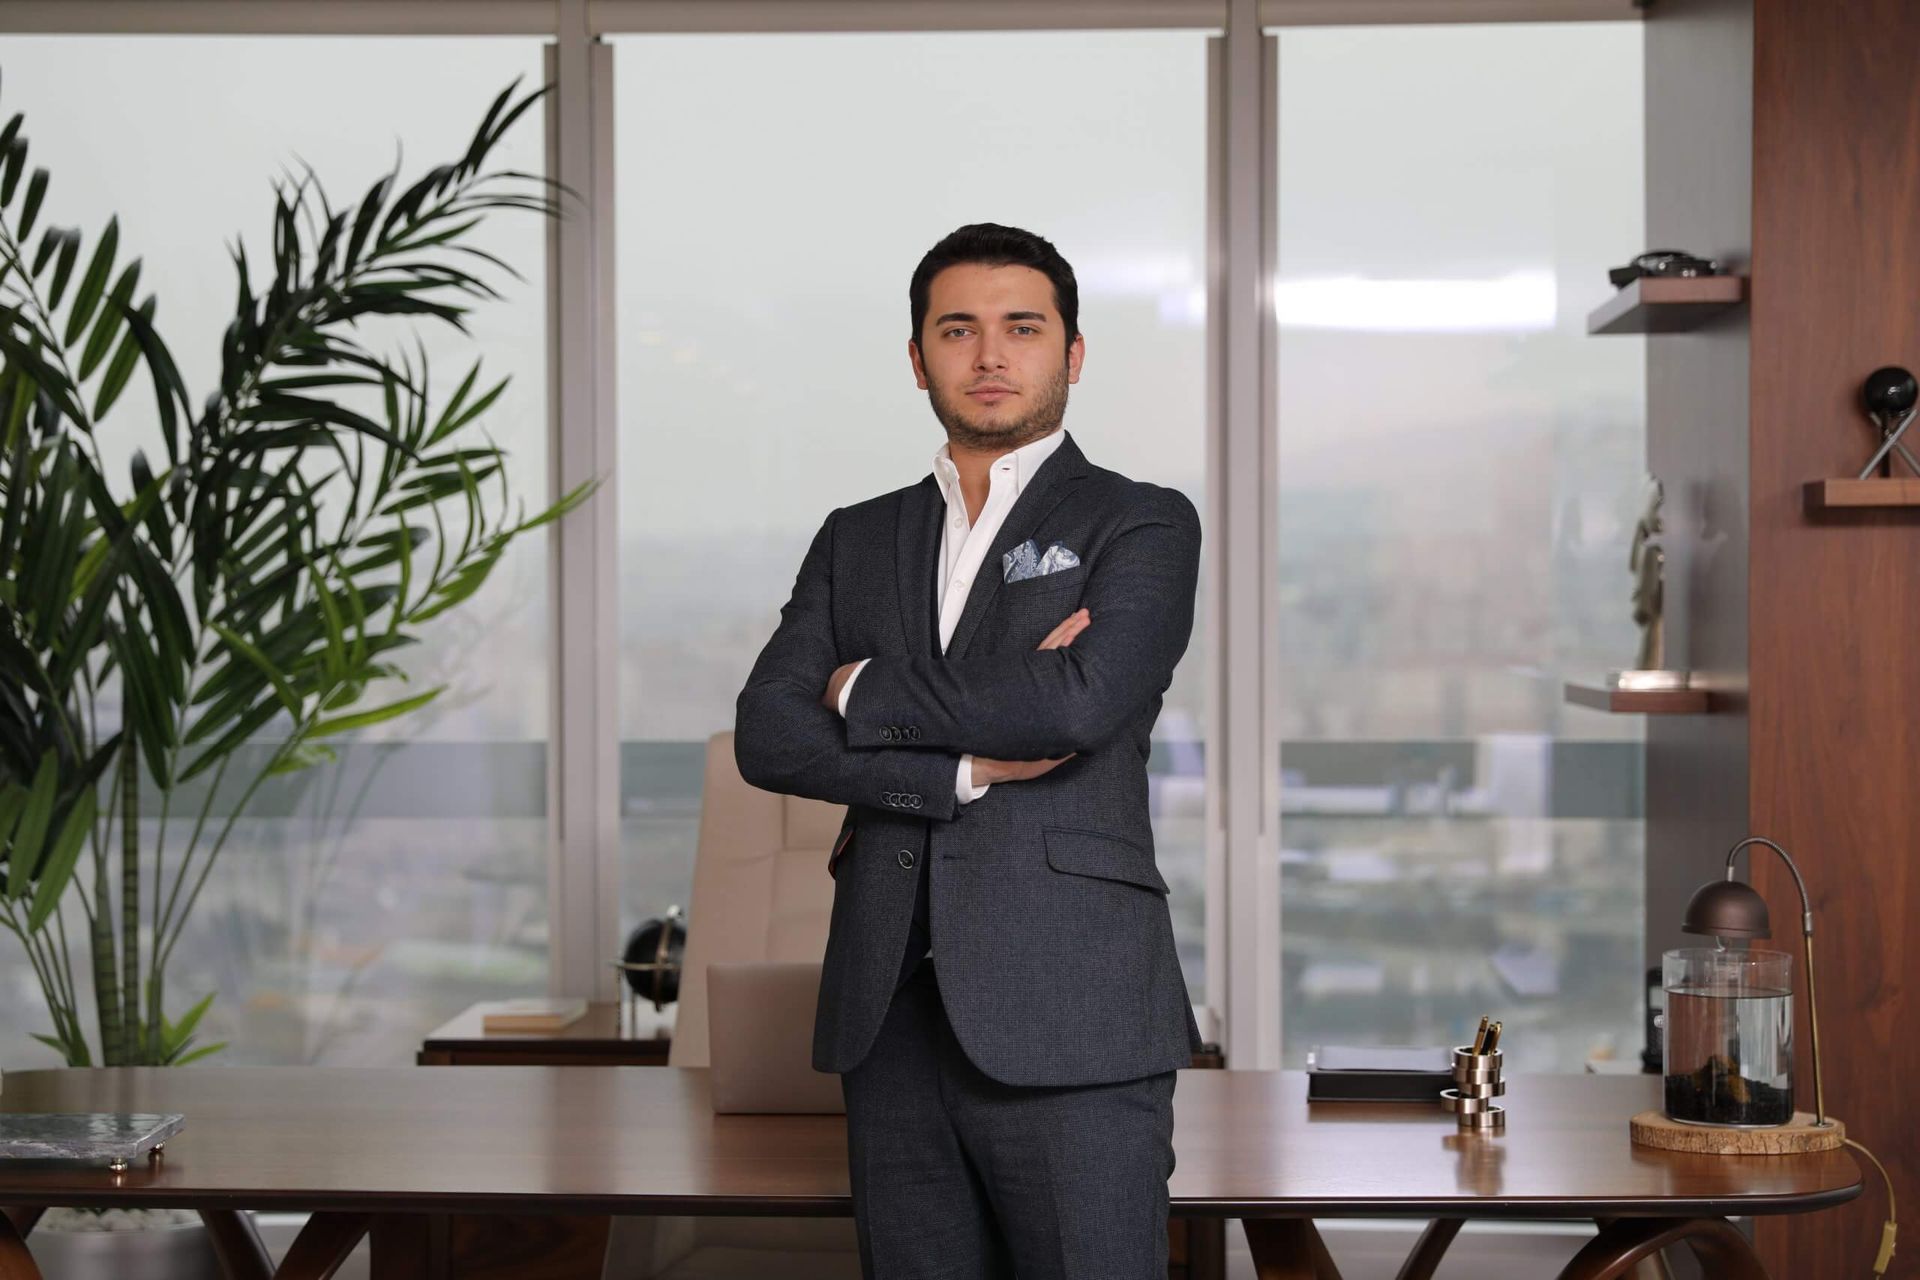 THODEX vurgunu: CEO Faruk Fatih Özer'in savunması